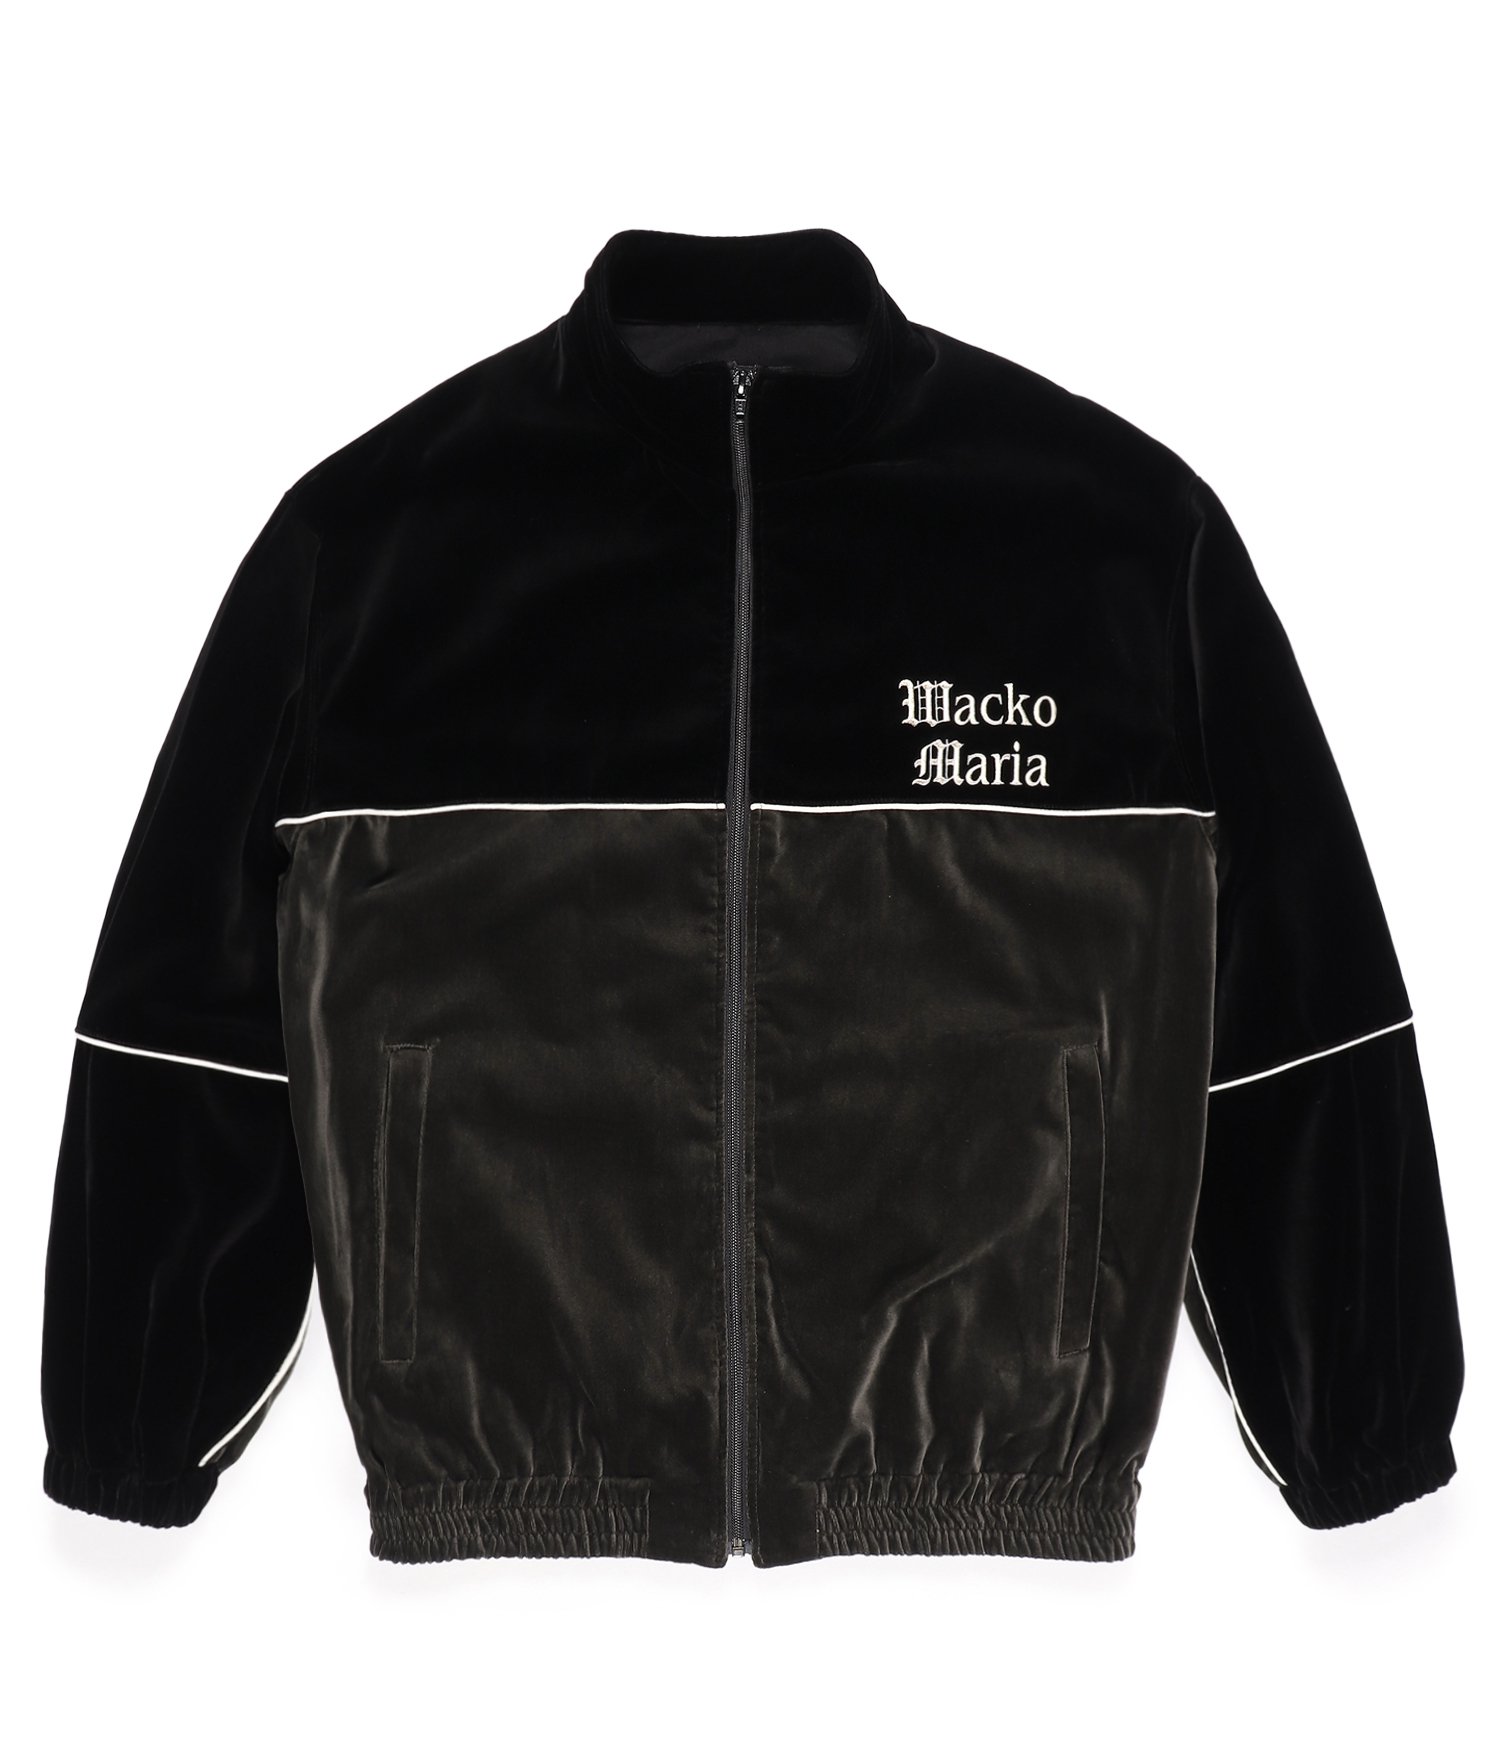 袖丈64WACKO MARIA 黒 ジャケット - テーラードジャケット